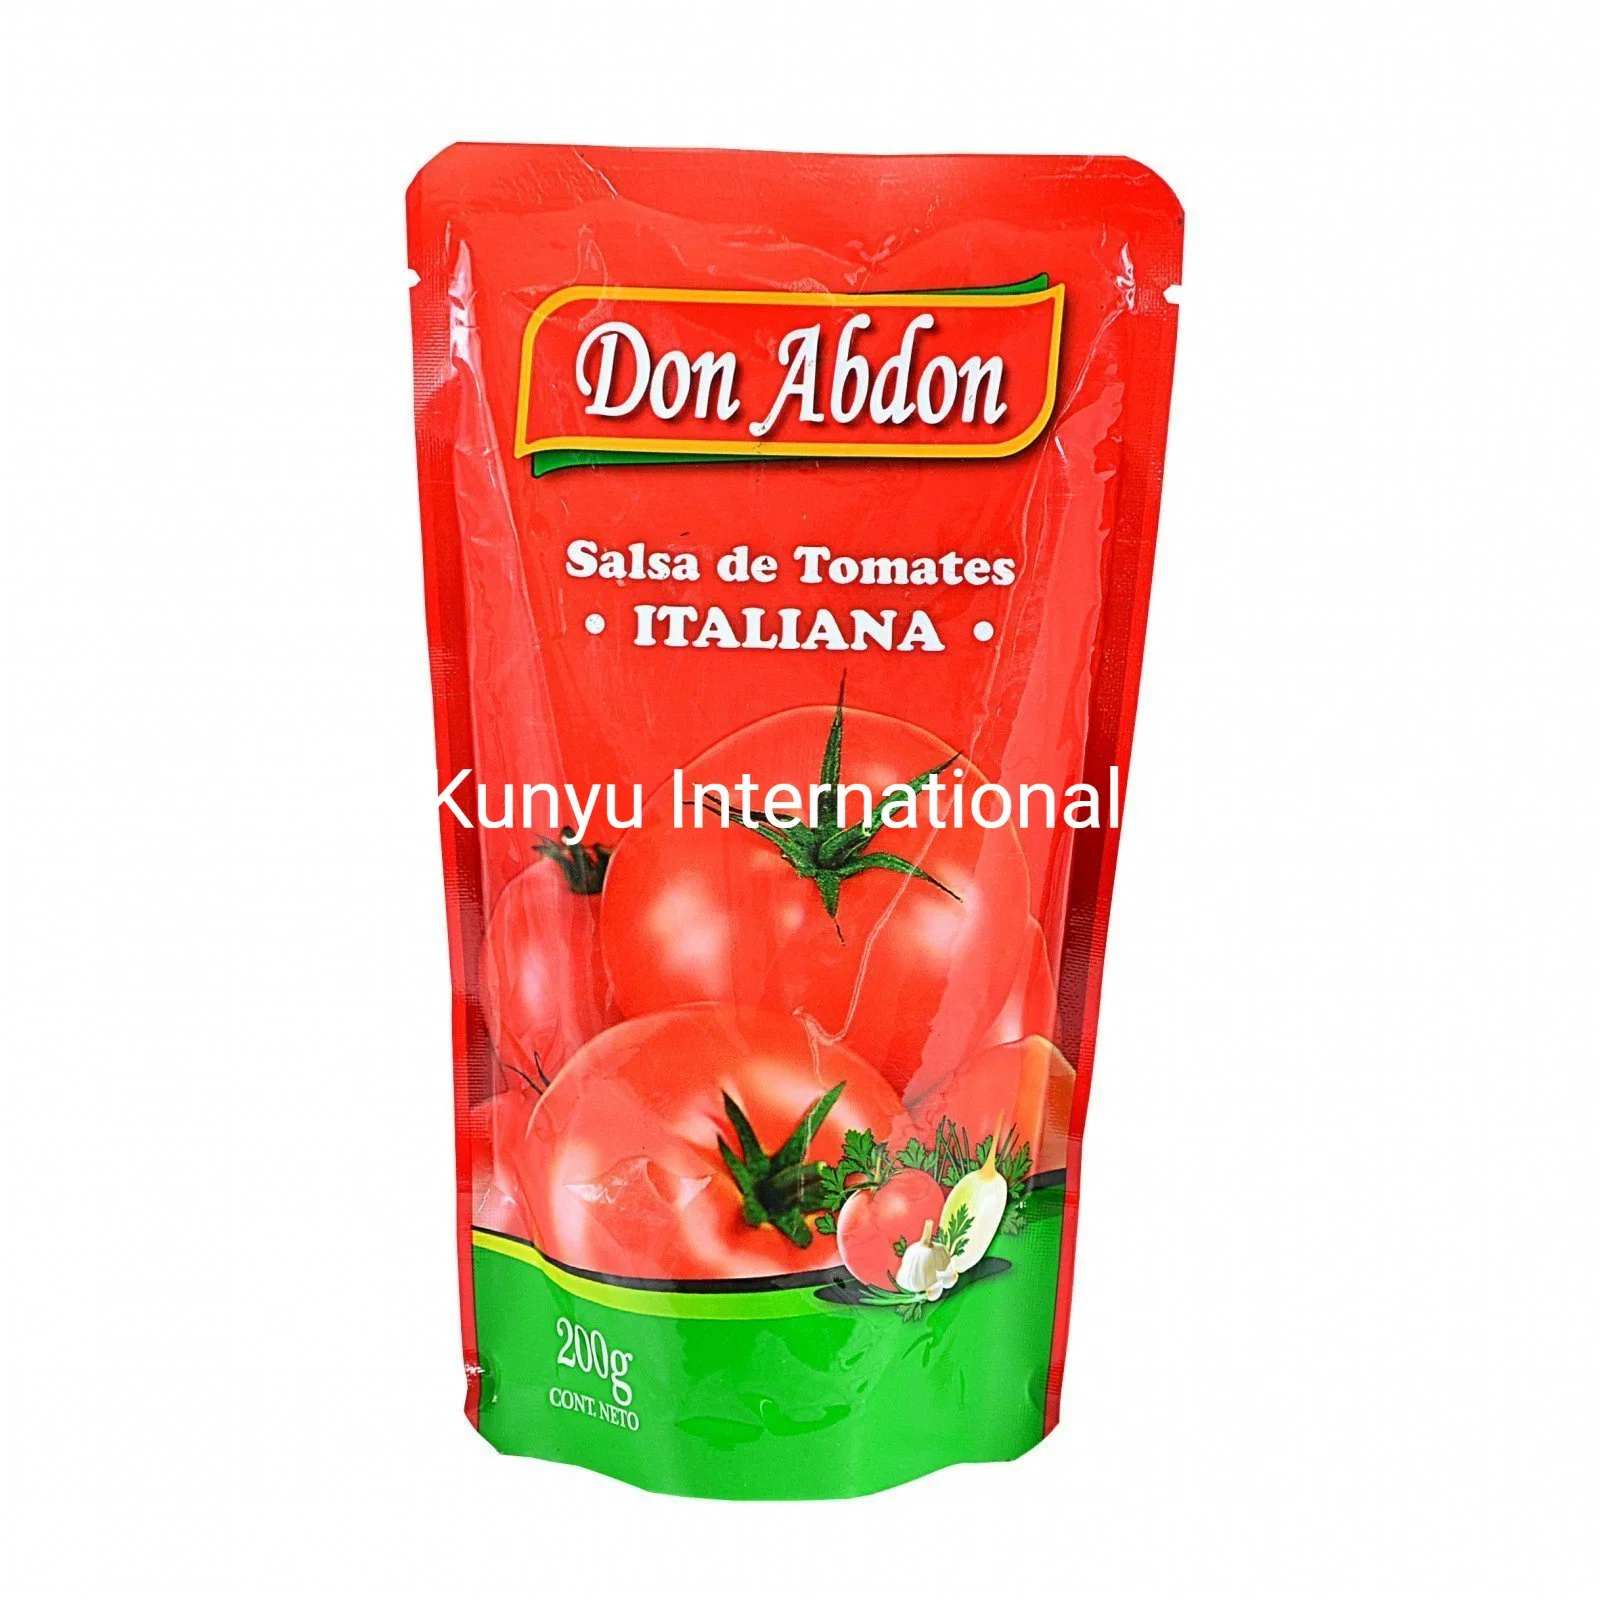 Hochwertige Tomatenpaste mit besten Preis in Beutel